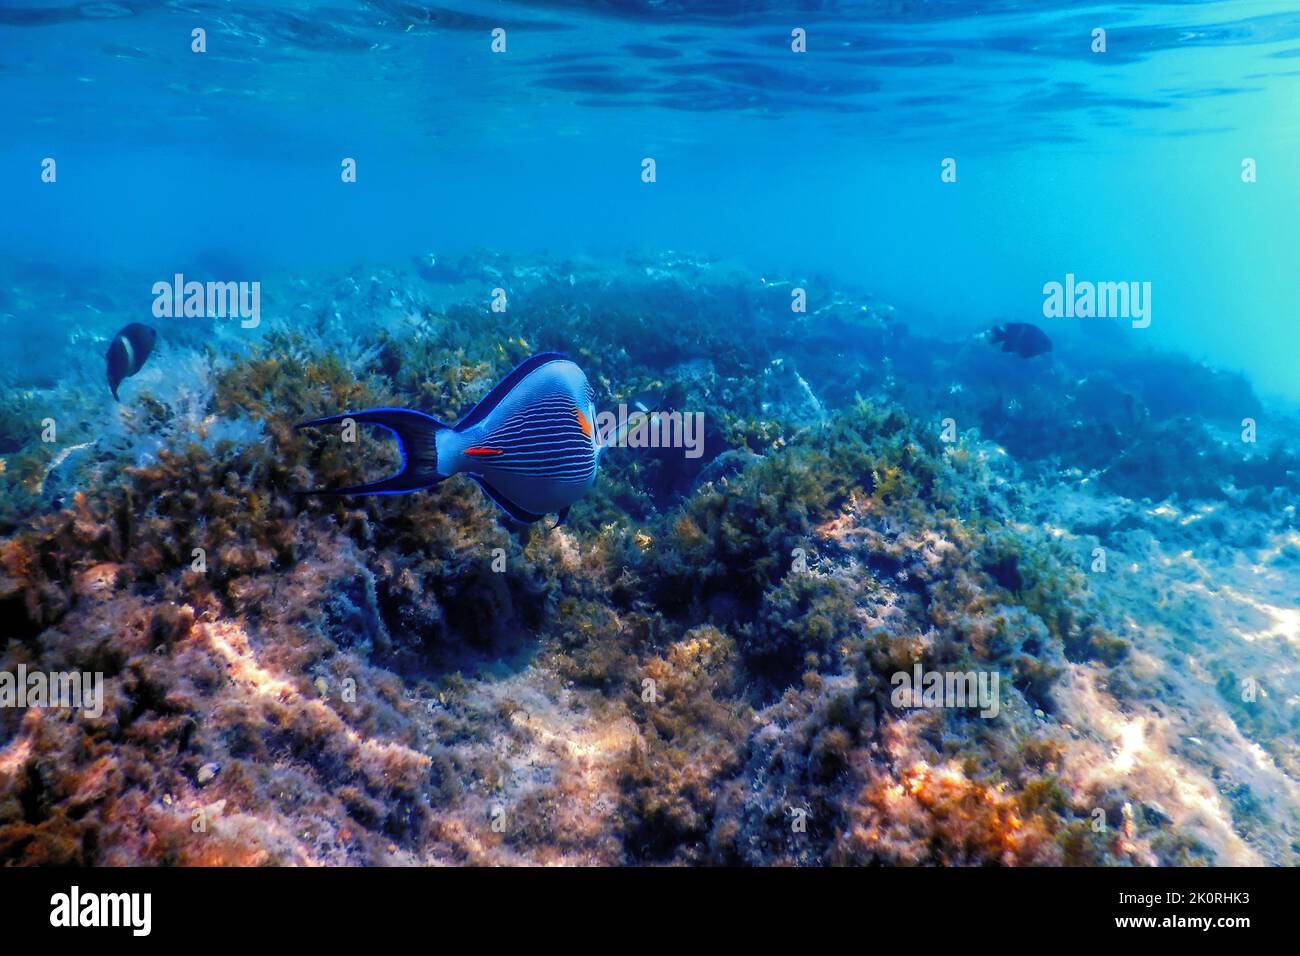 The Sohal Surgeonfish, sohal tang (Acanthurus sohal) Marine life Stock Photo